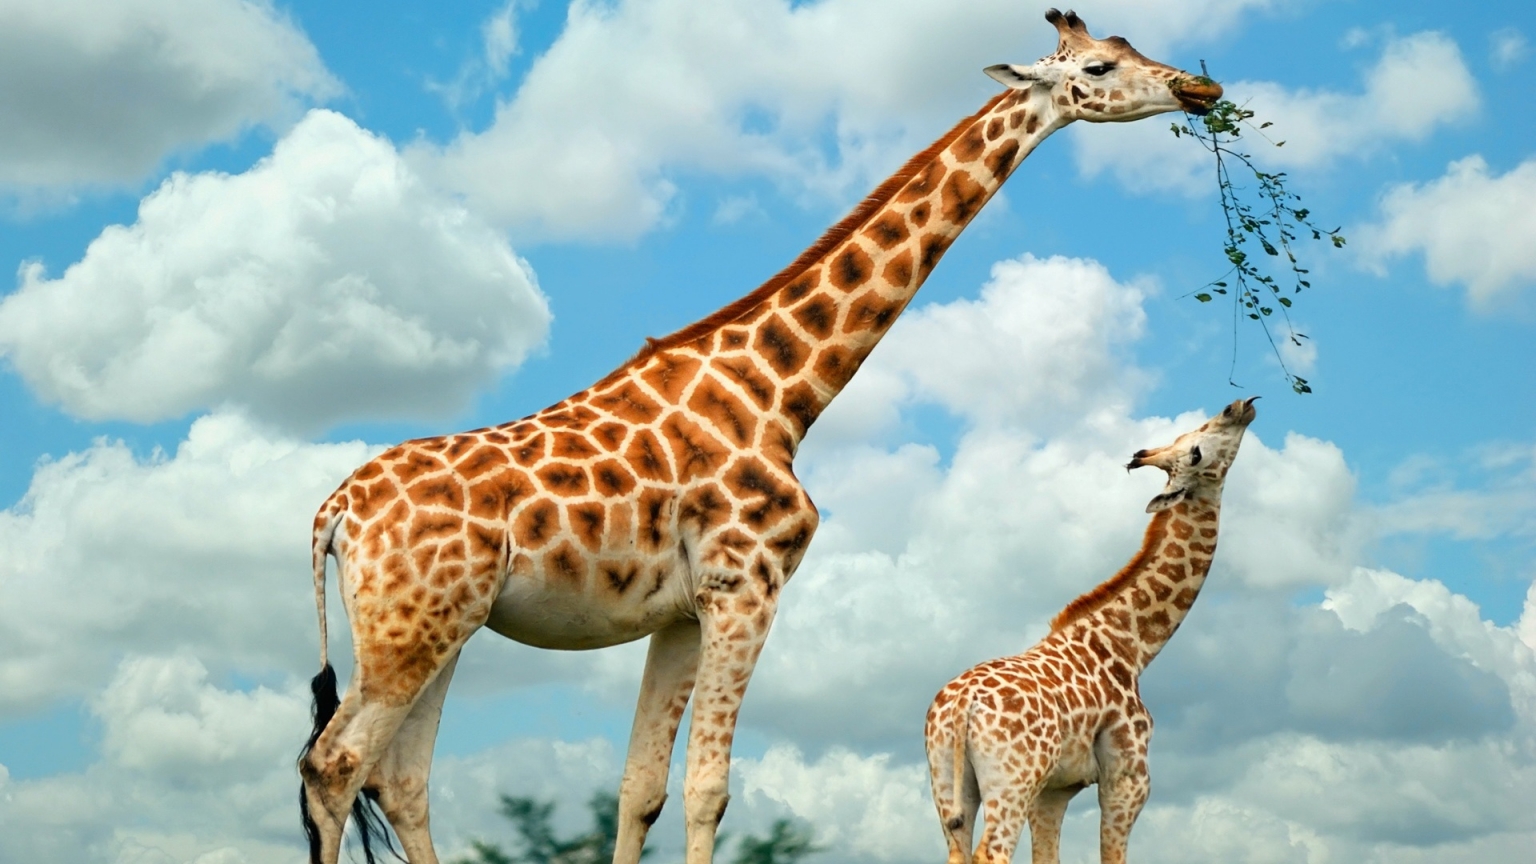 Happy Giraffe Family for 1536 x 864 HDTV resolution